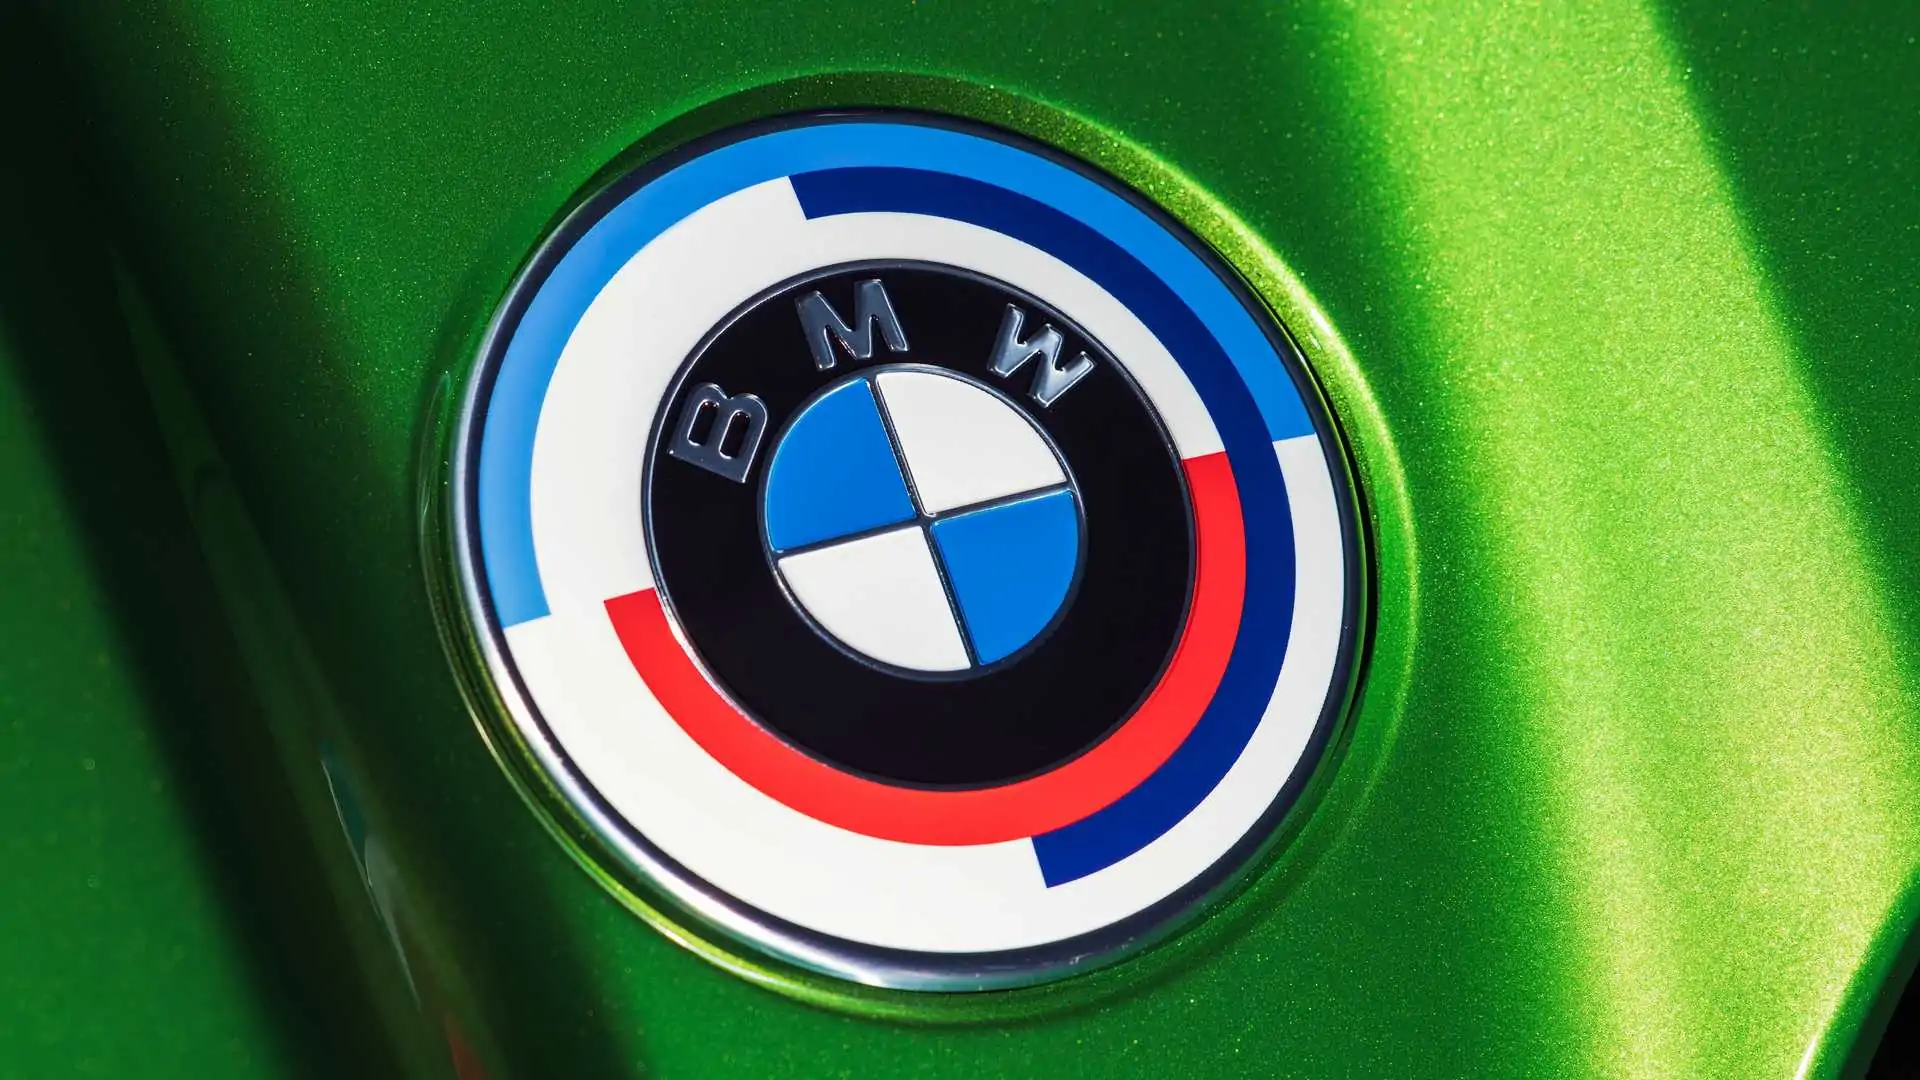 Emblema retrô da BMW chega para comemorar os 50 anos da M, conheça!